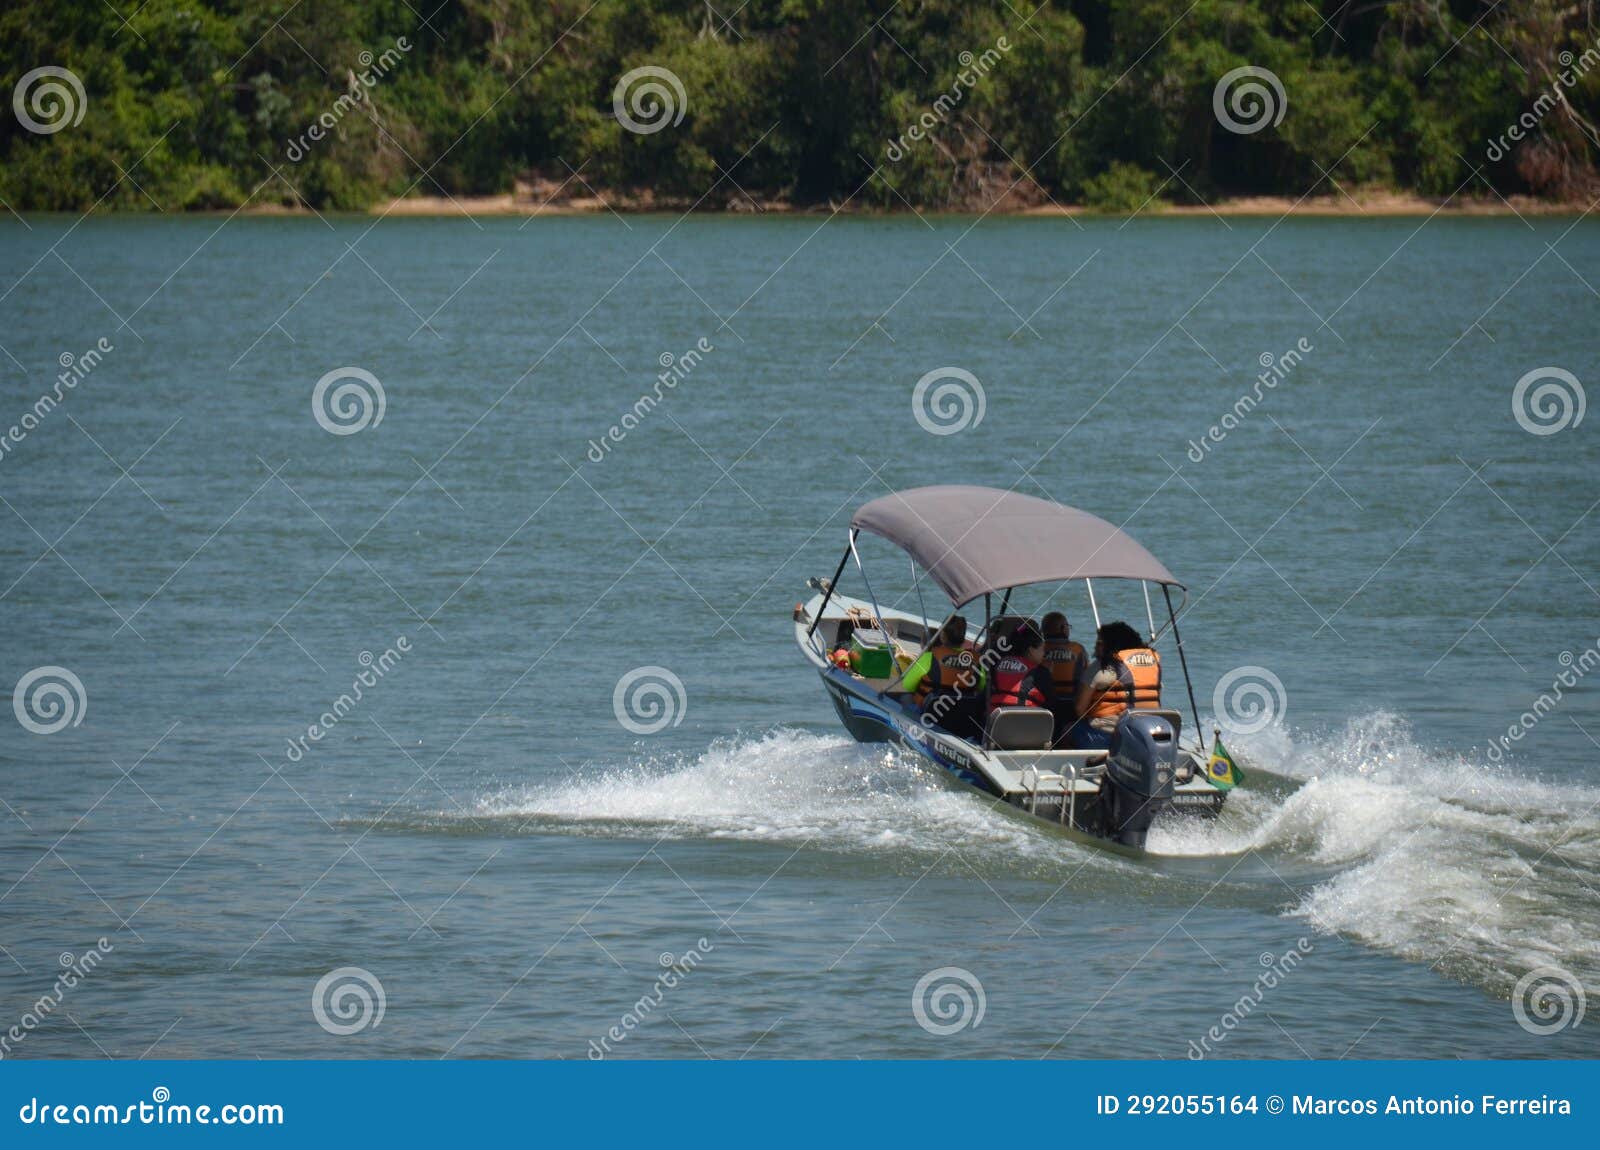 speedboat on the paranÃ¡ river, in porto camargo, brazil.